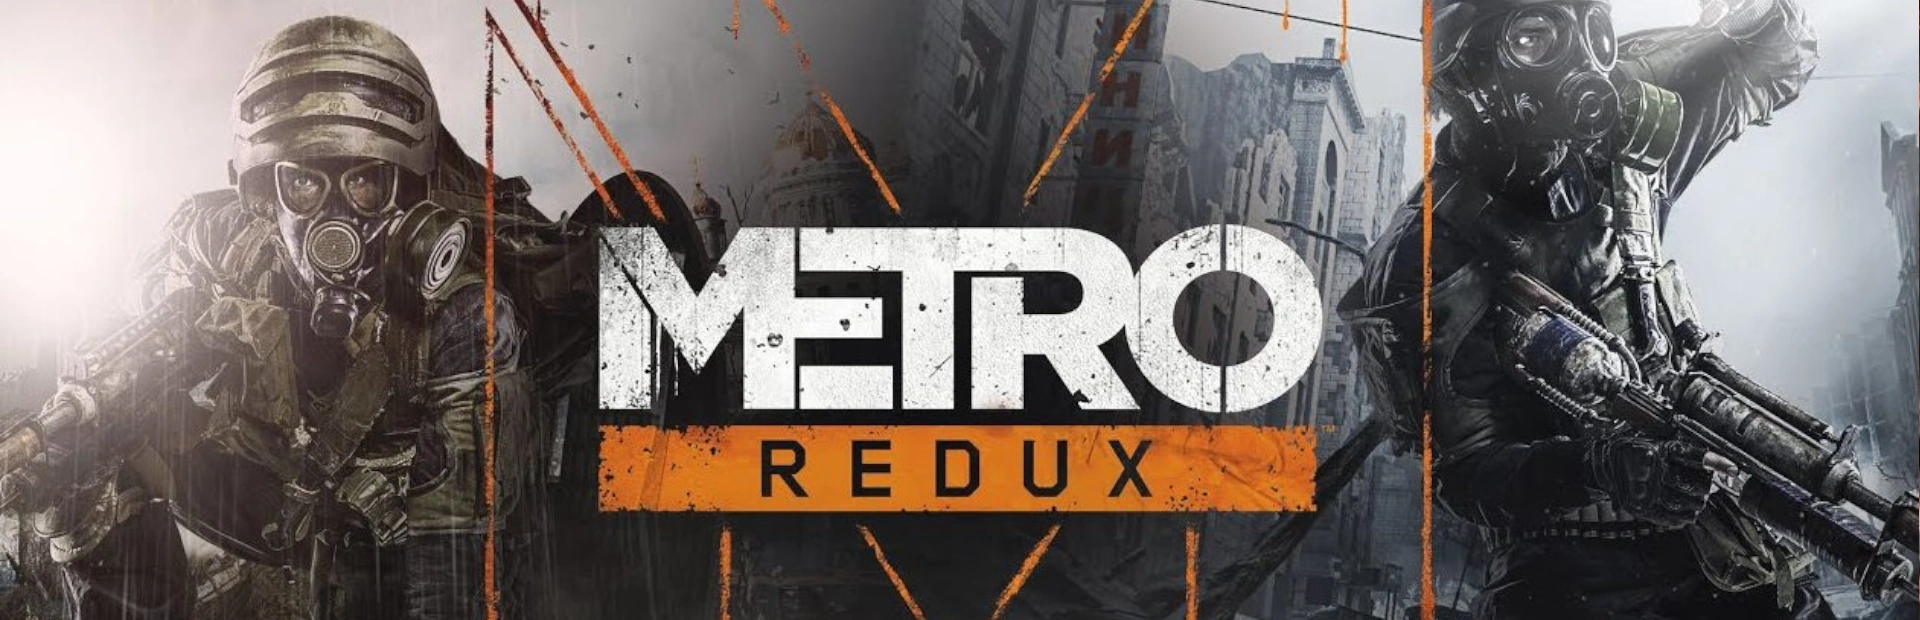 دانلود بازی Metro Redux برای کامپیوتر | گیمباتو